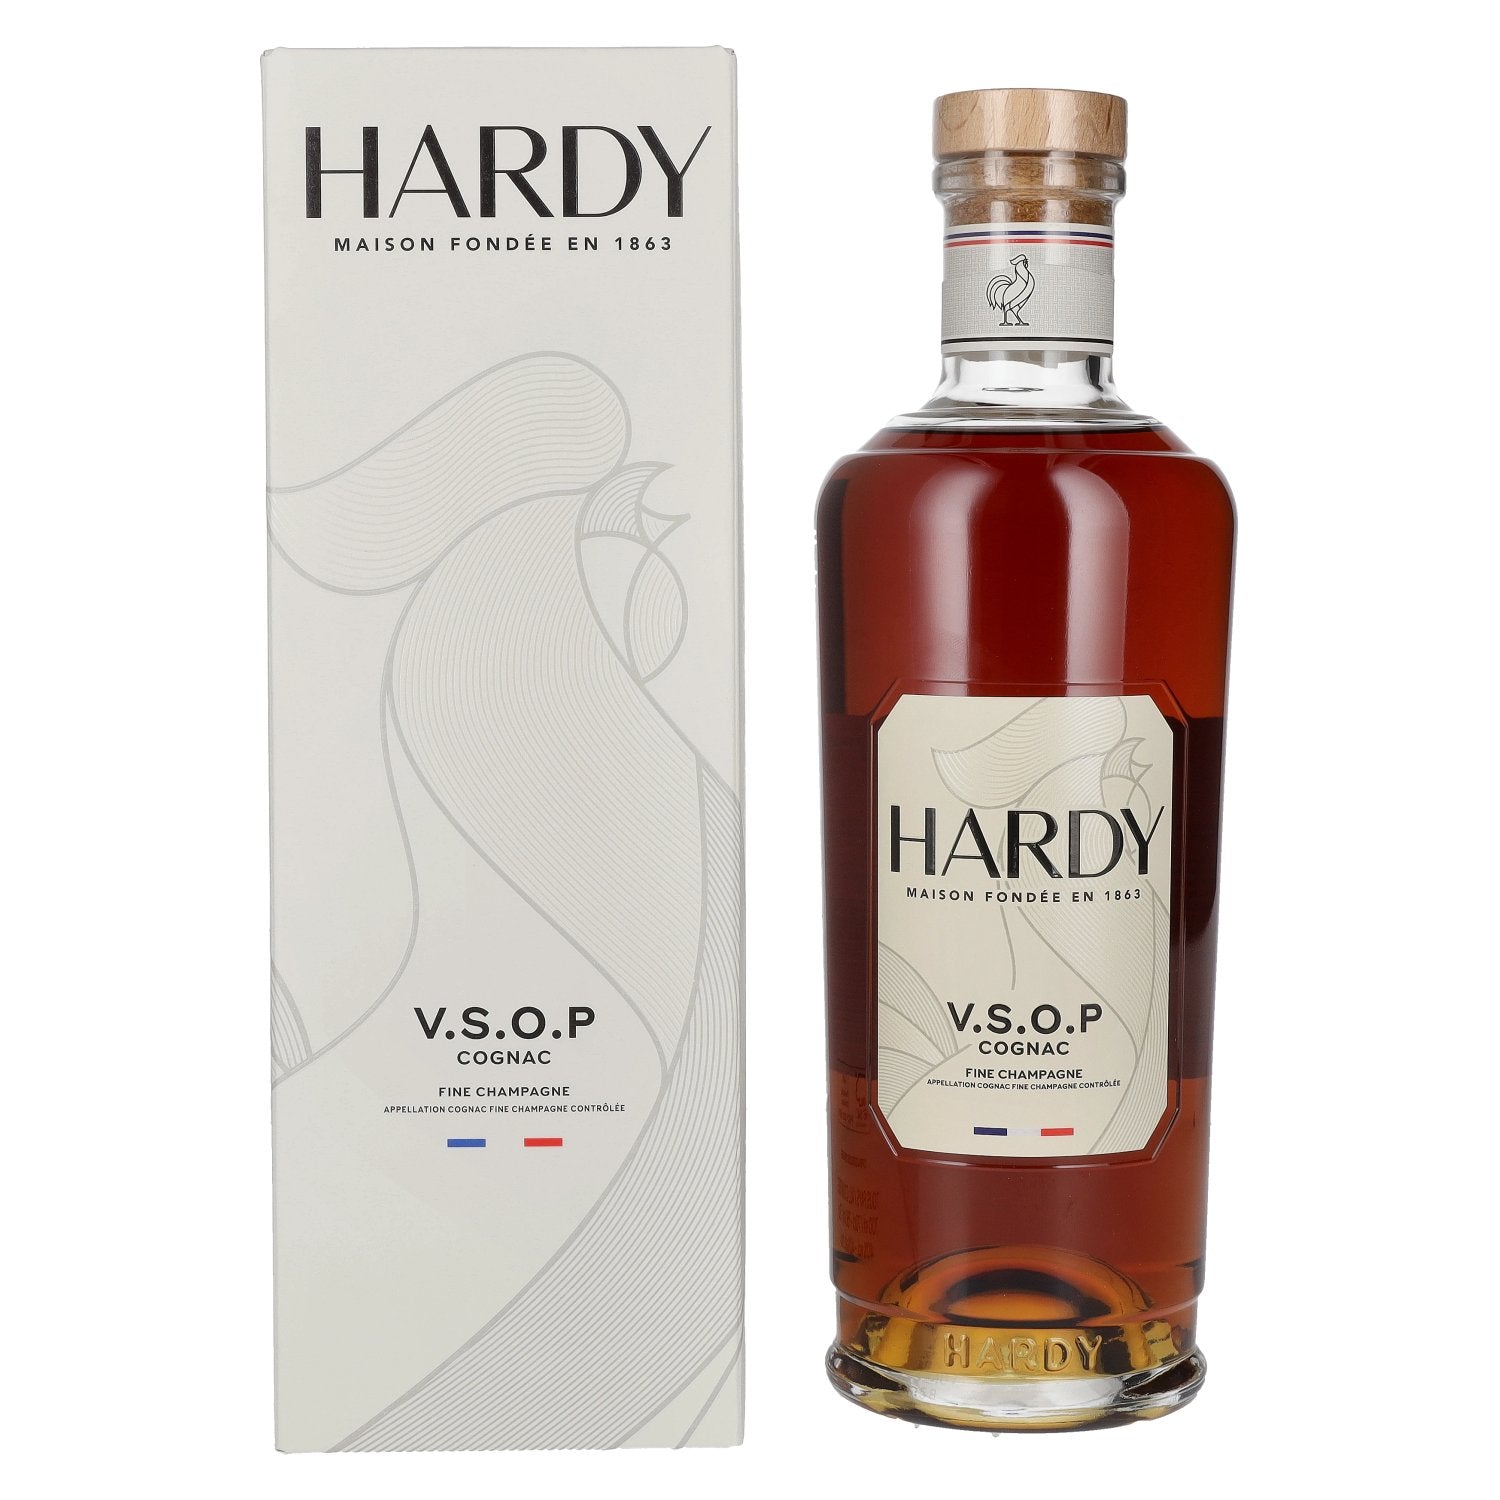 Hardy V.S.O.P Fine Champagne Cognac 40% Vol. 0,7l in Giftbox